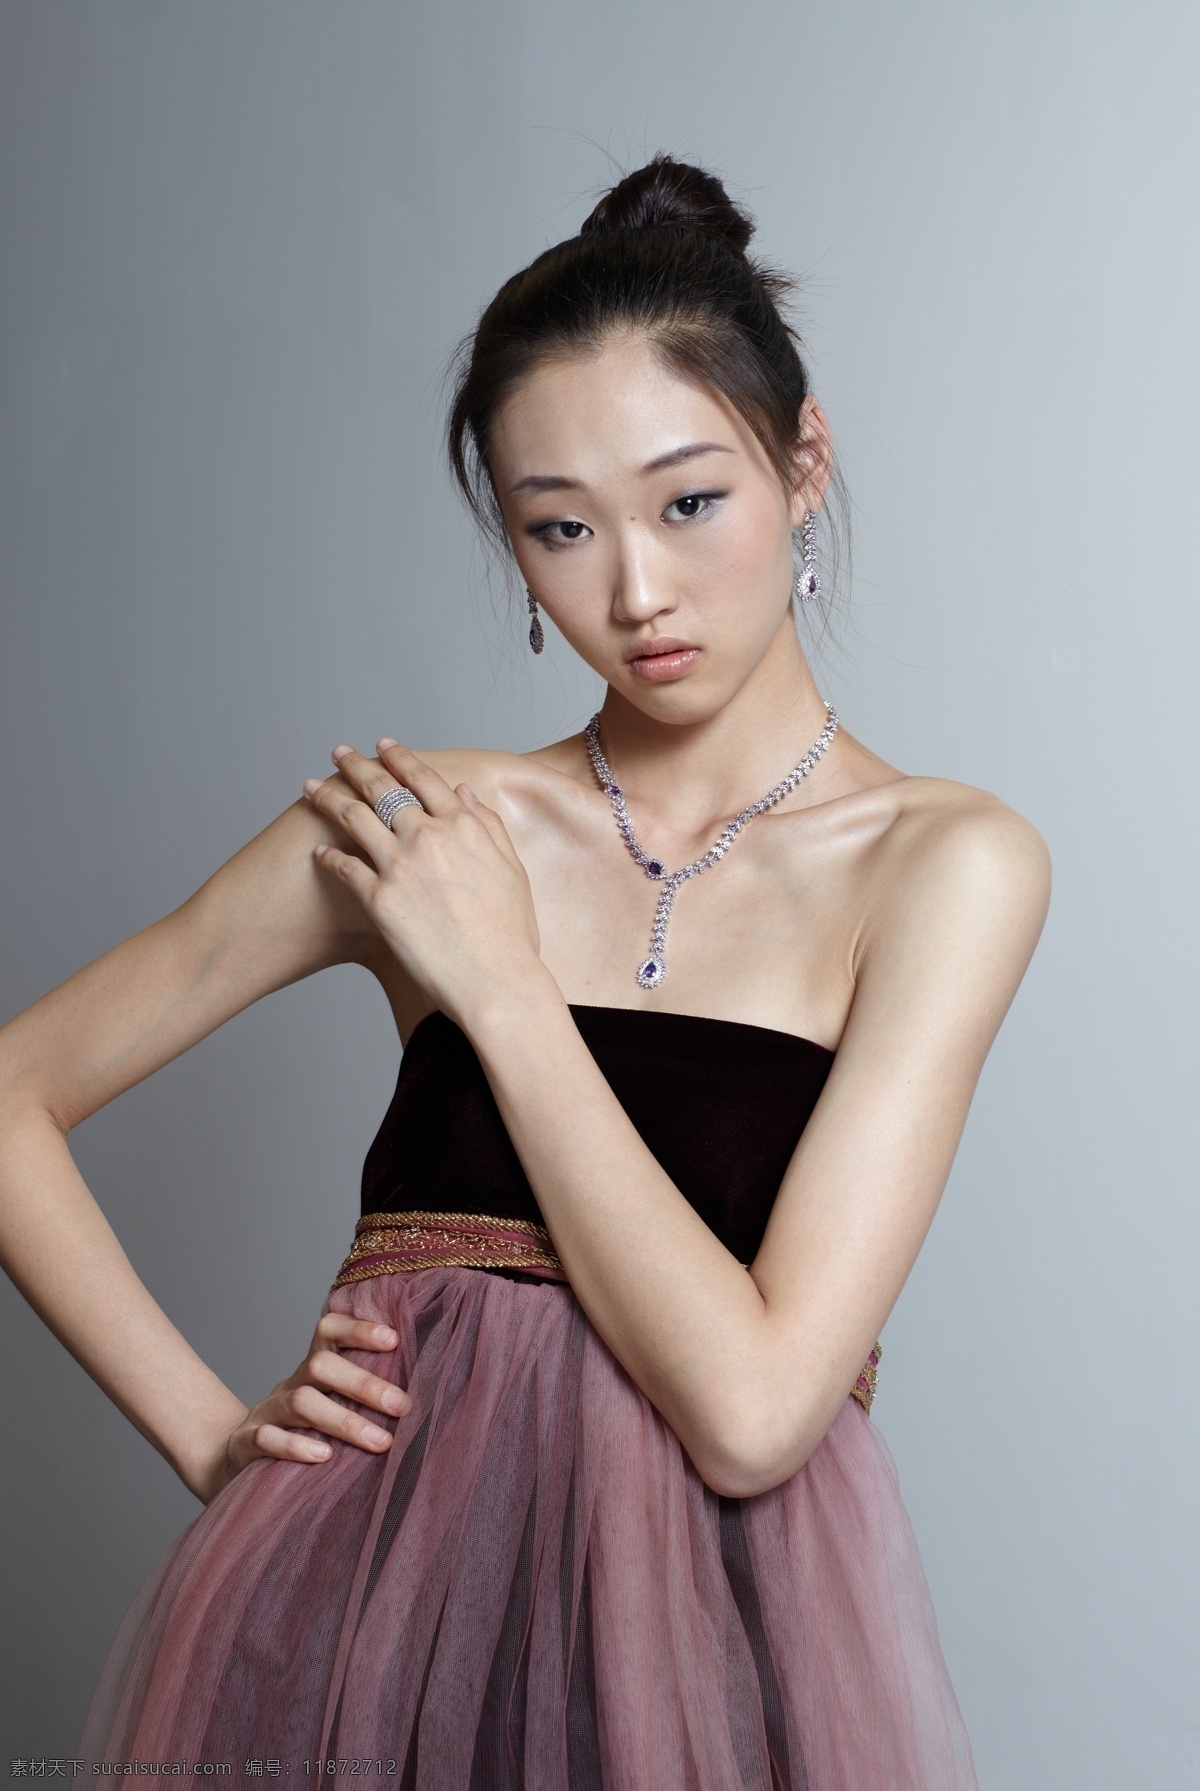 美女模特 中国美女模特 平面模特 服装模特 白背景模特 珠宝首饰模特 饰品模特 人物摄影 人物图库